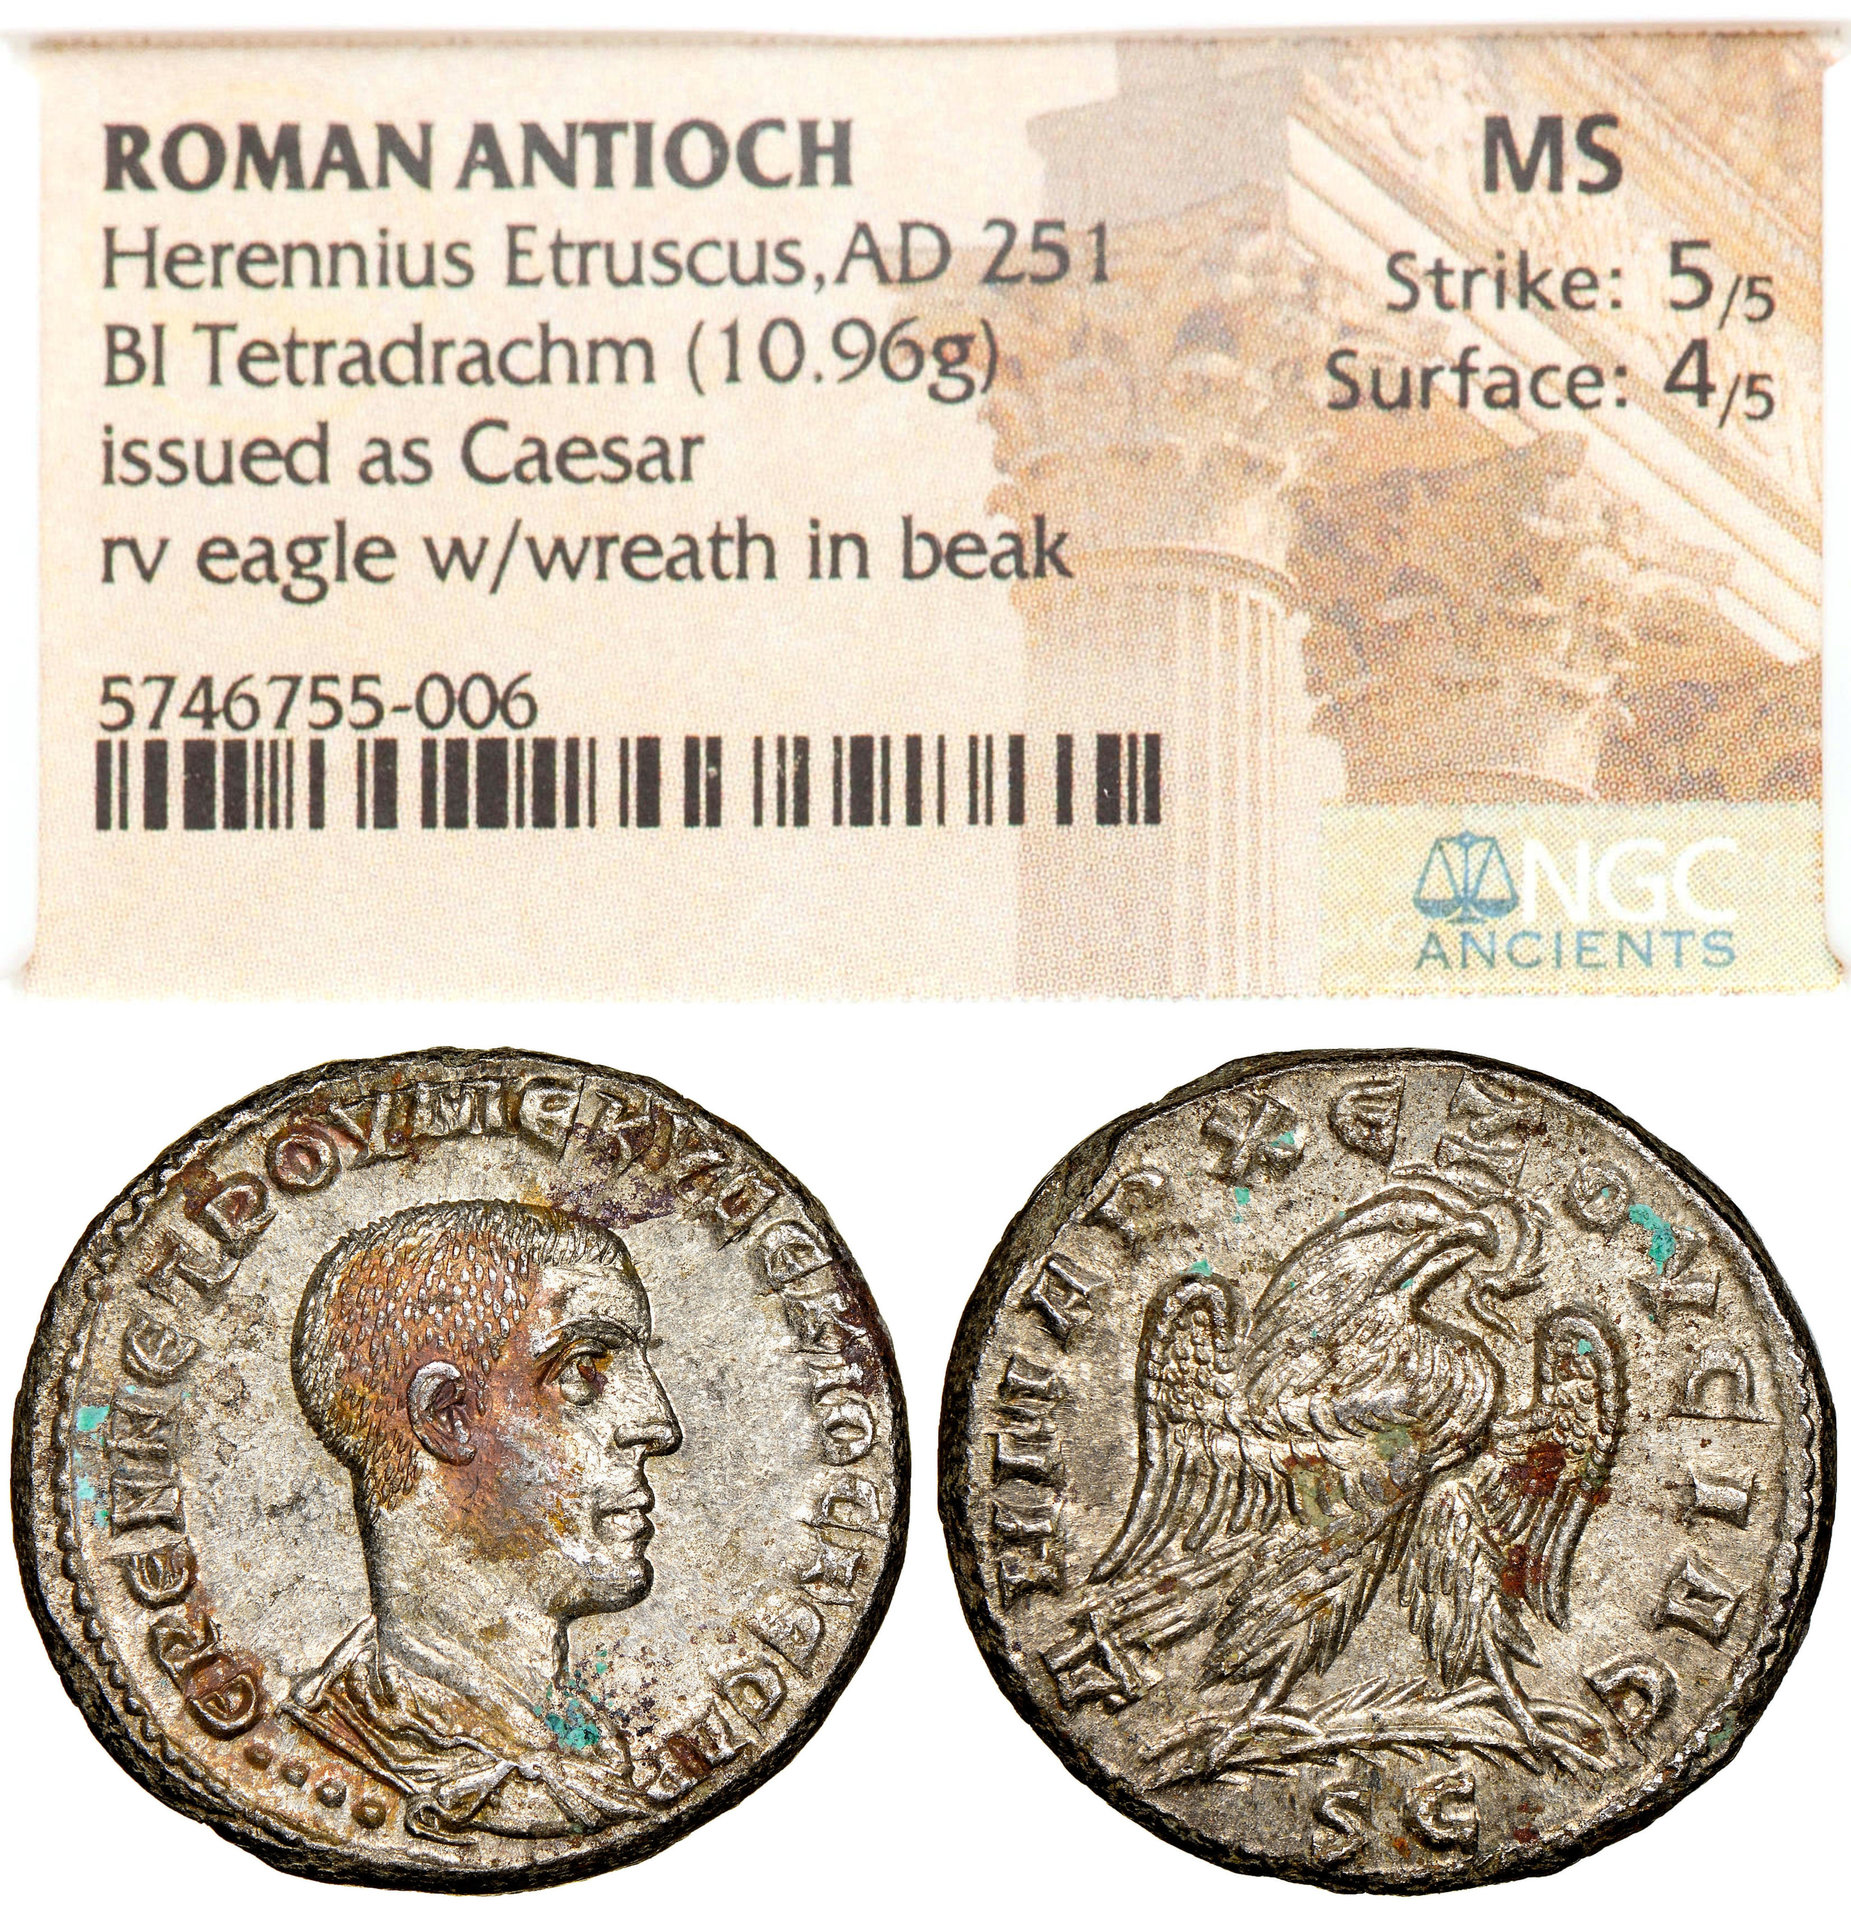 Herennius Etruscus Tet, HA, 7-29-2020, $122.00.jpg